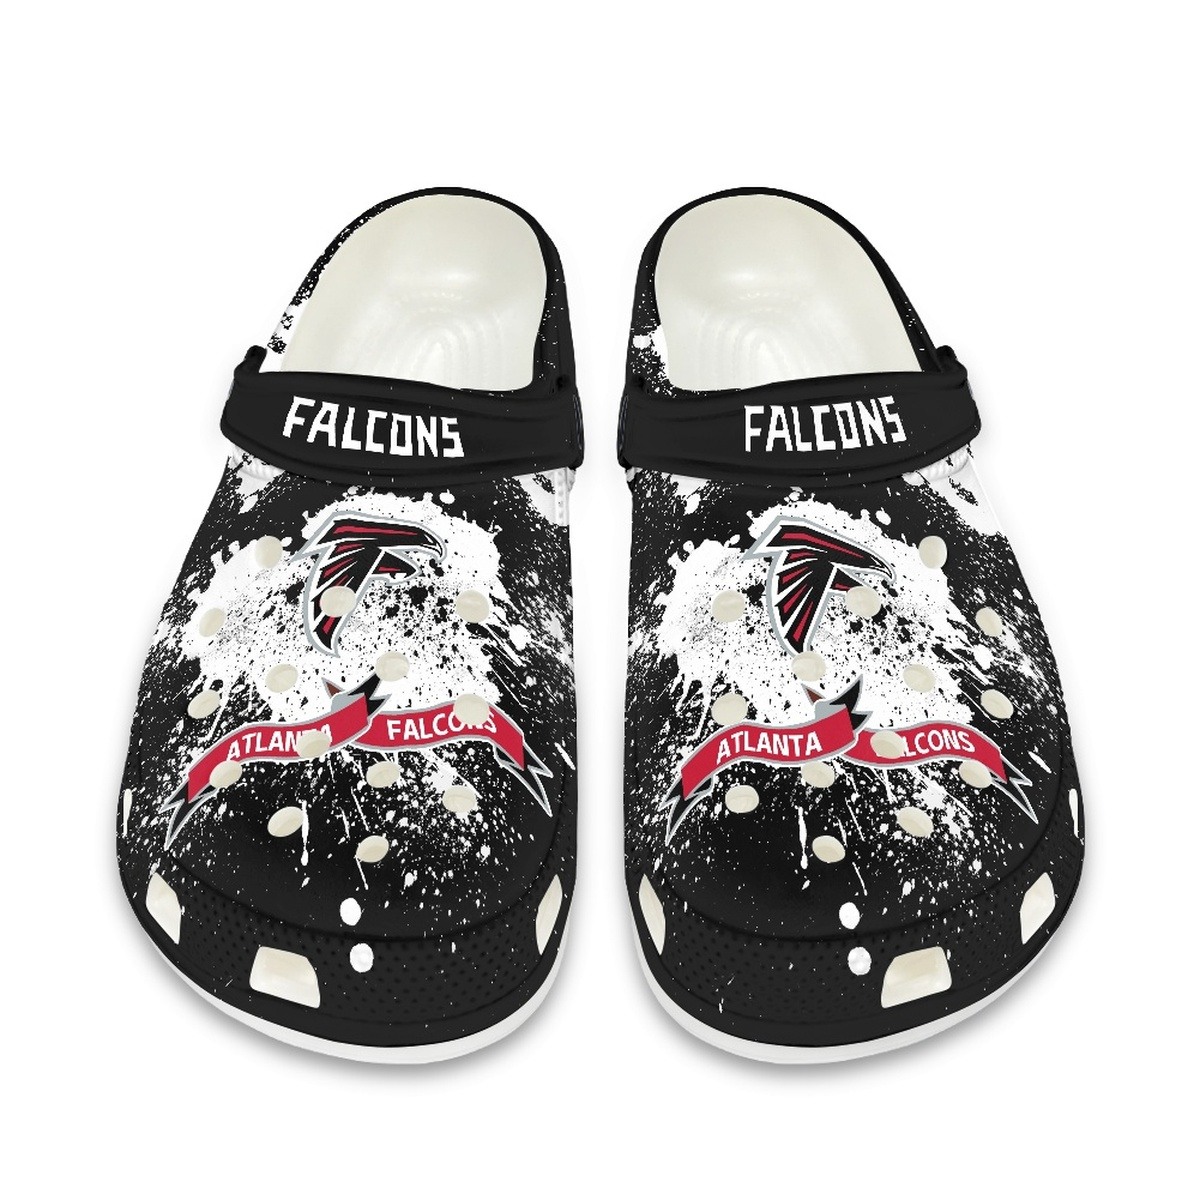 Atlanta Falcons Crocs shoes